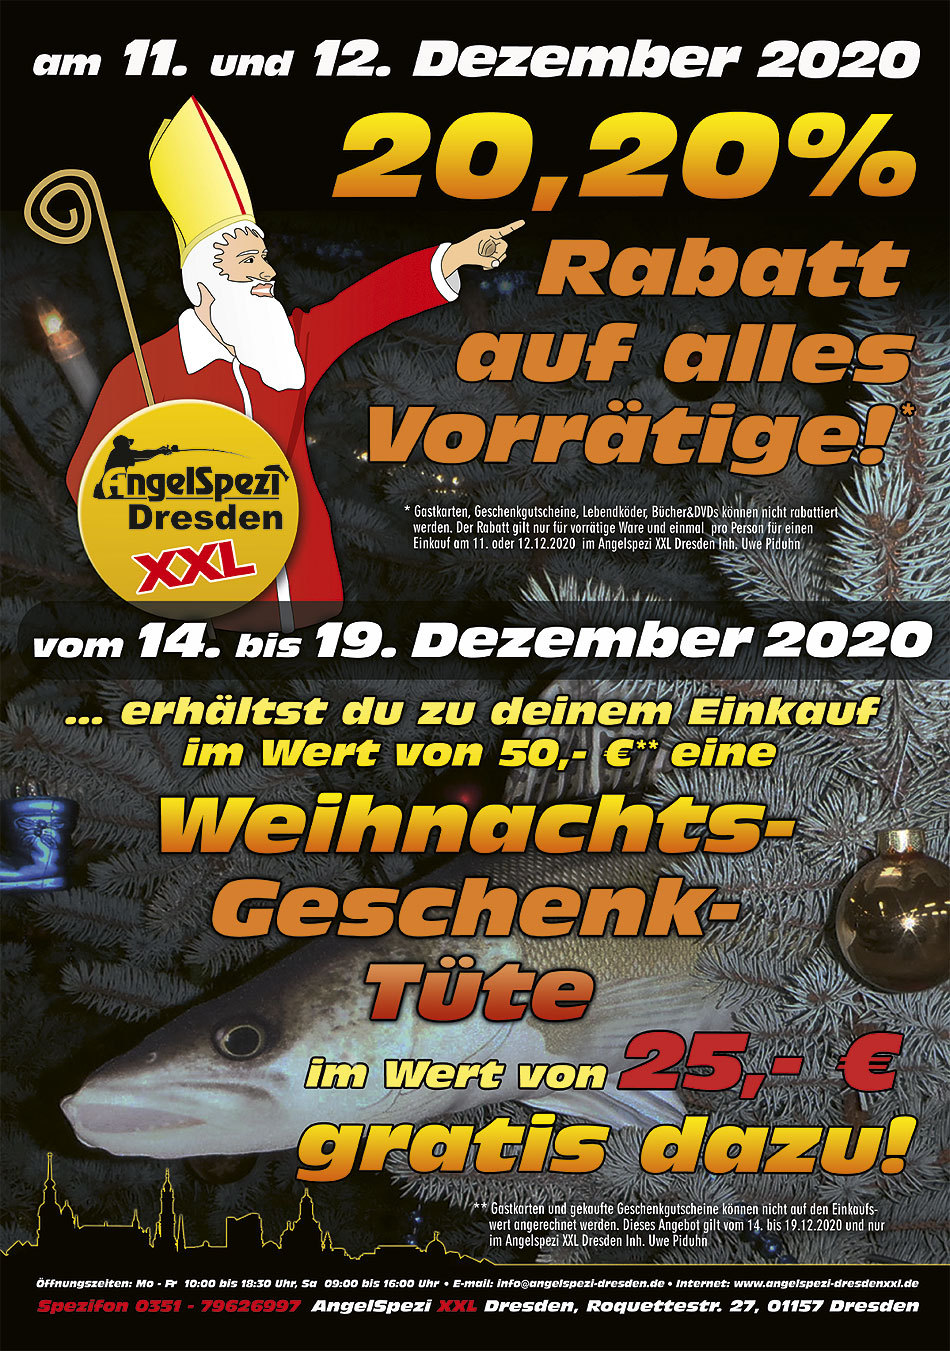 Weihnachtsfest beim Angelspezi XXL Dresden am 11. und 12. Dezember 2020